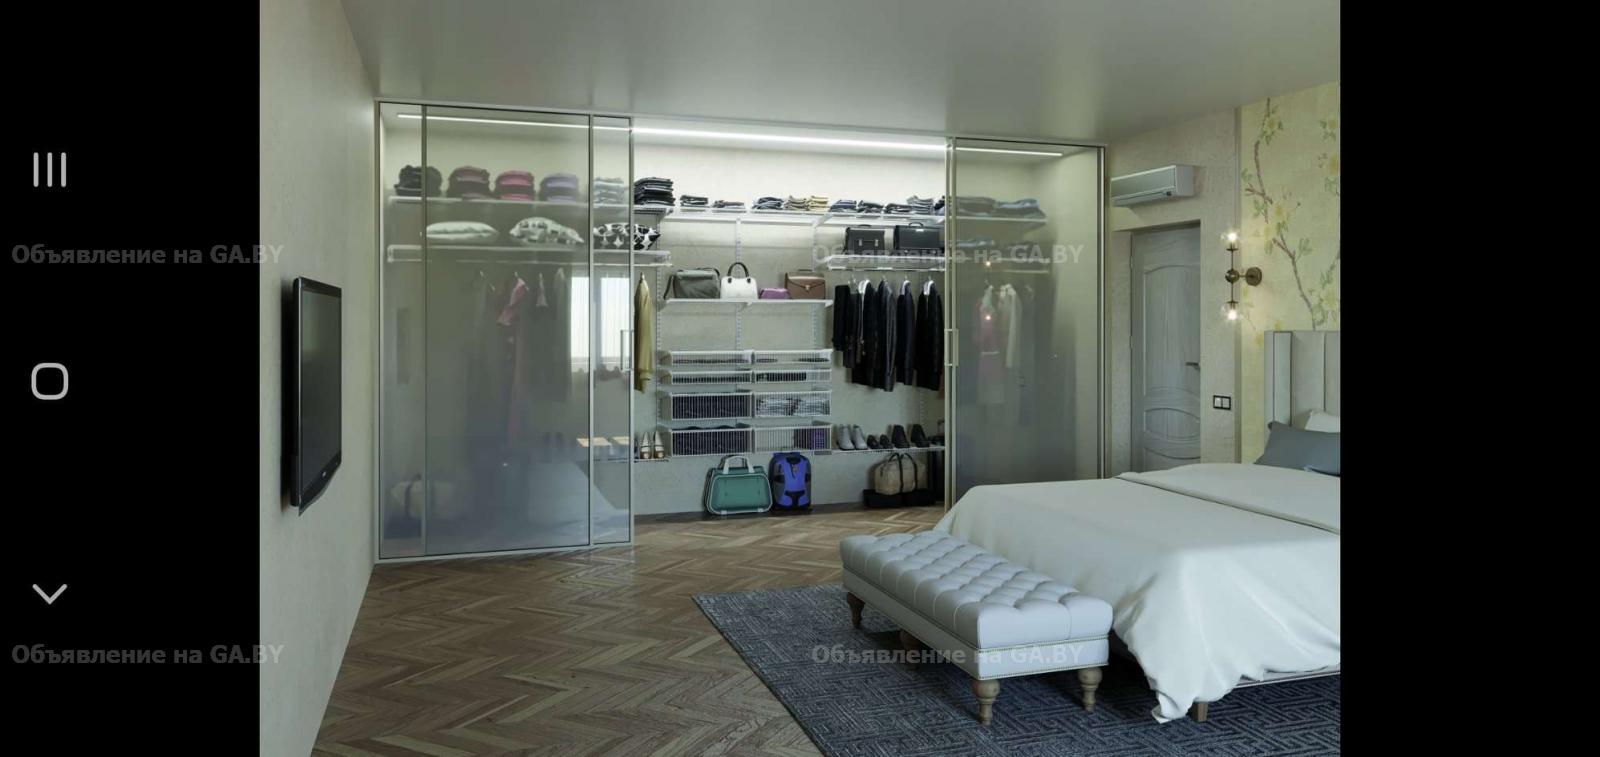 Выполню Гардеробные системы для гардеробных комнат, кладовок, шкафов - GA.BY